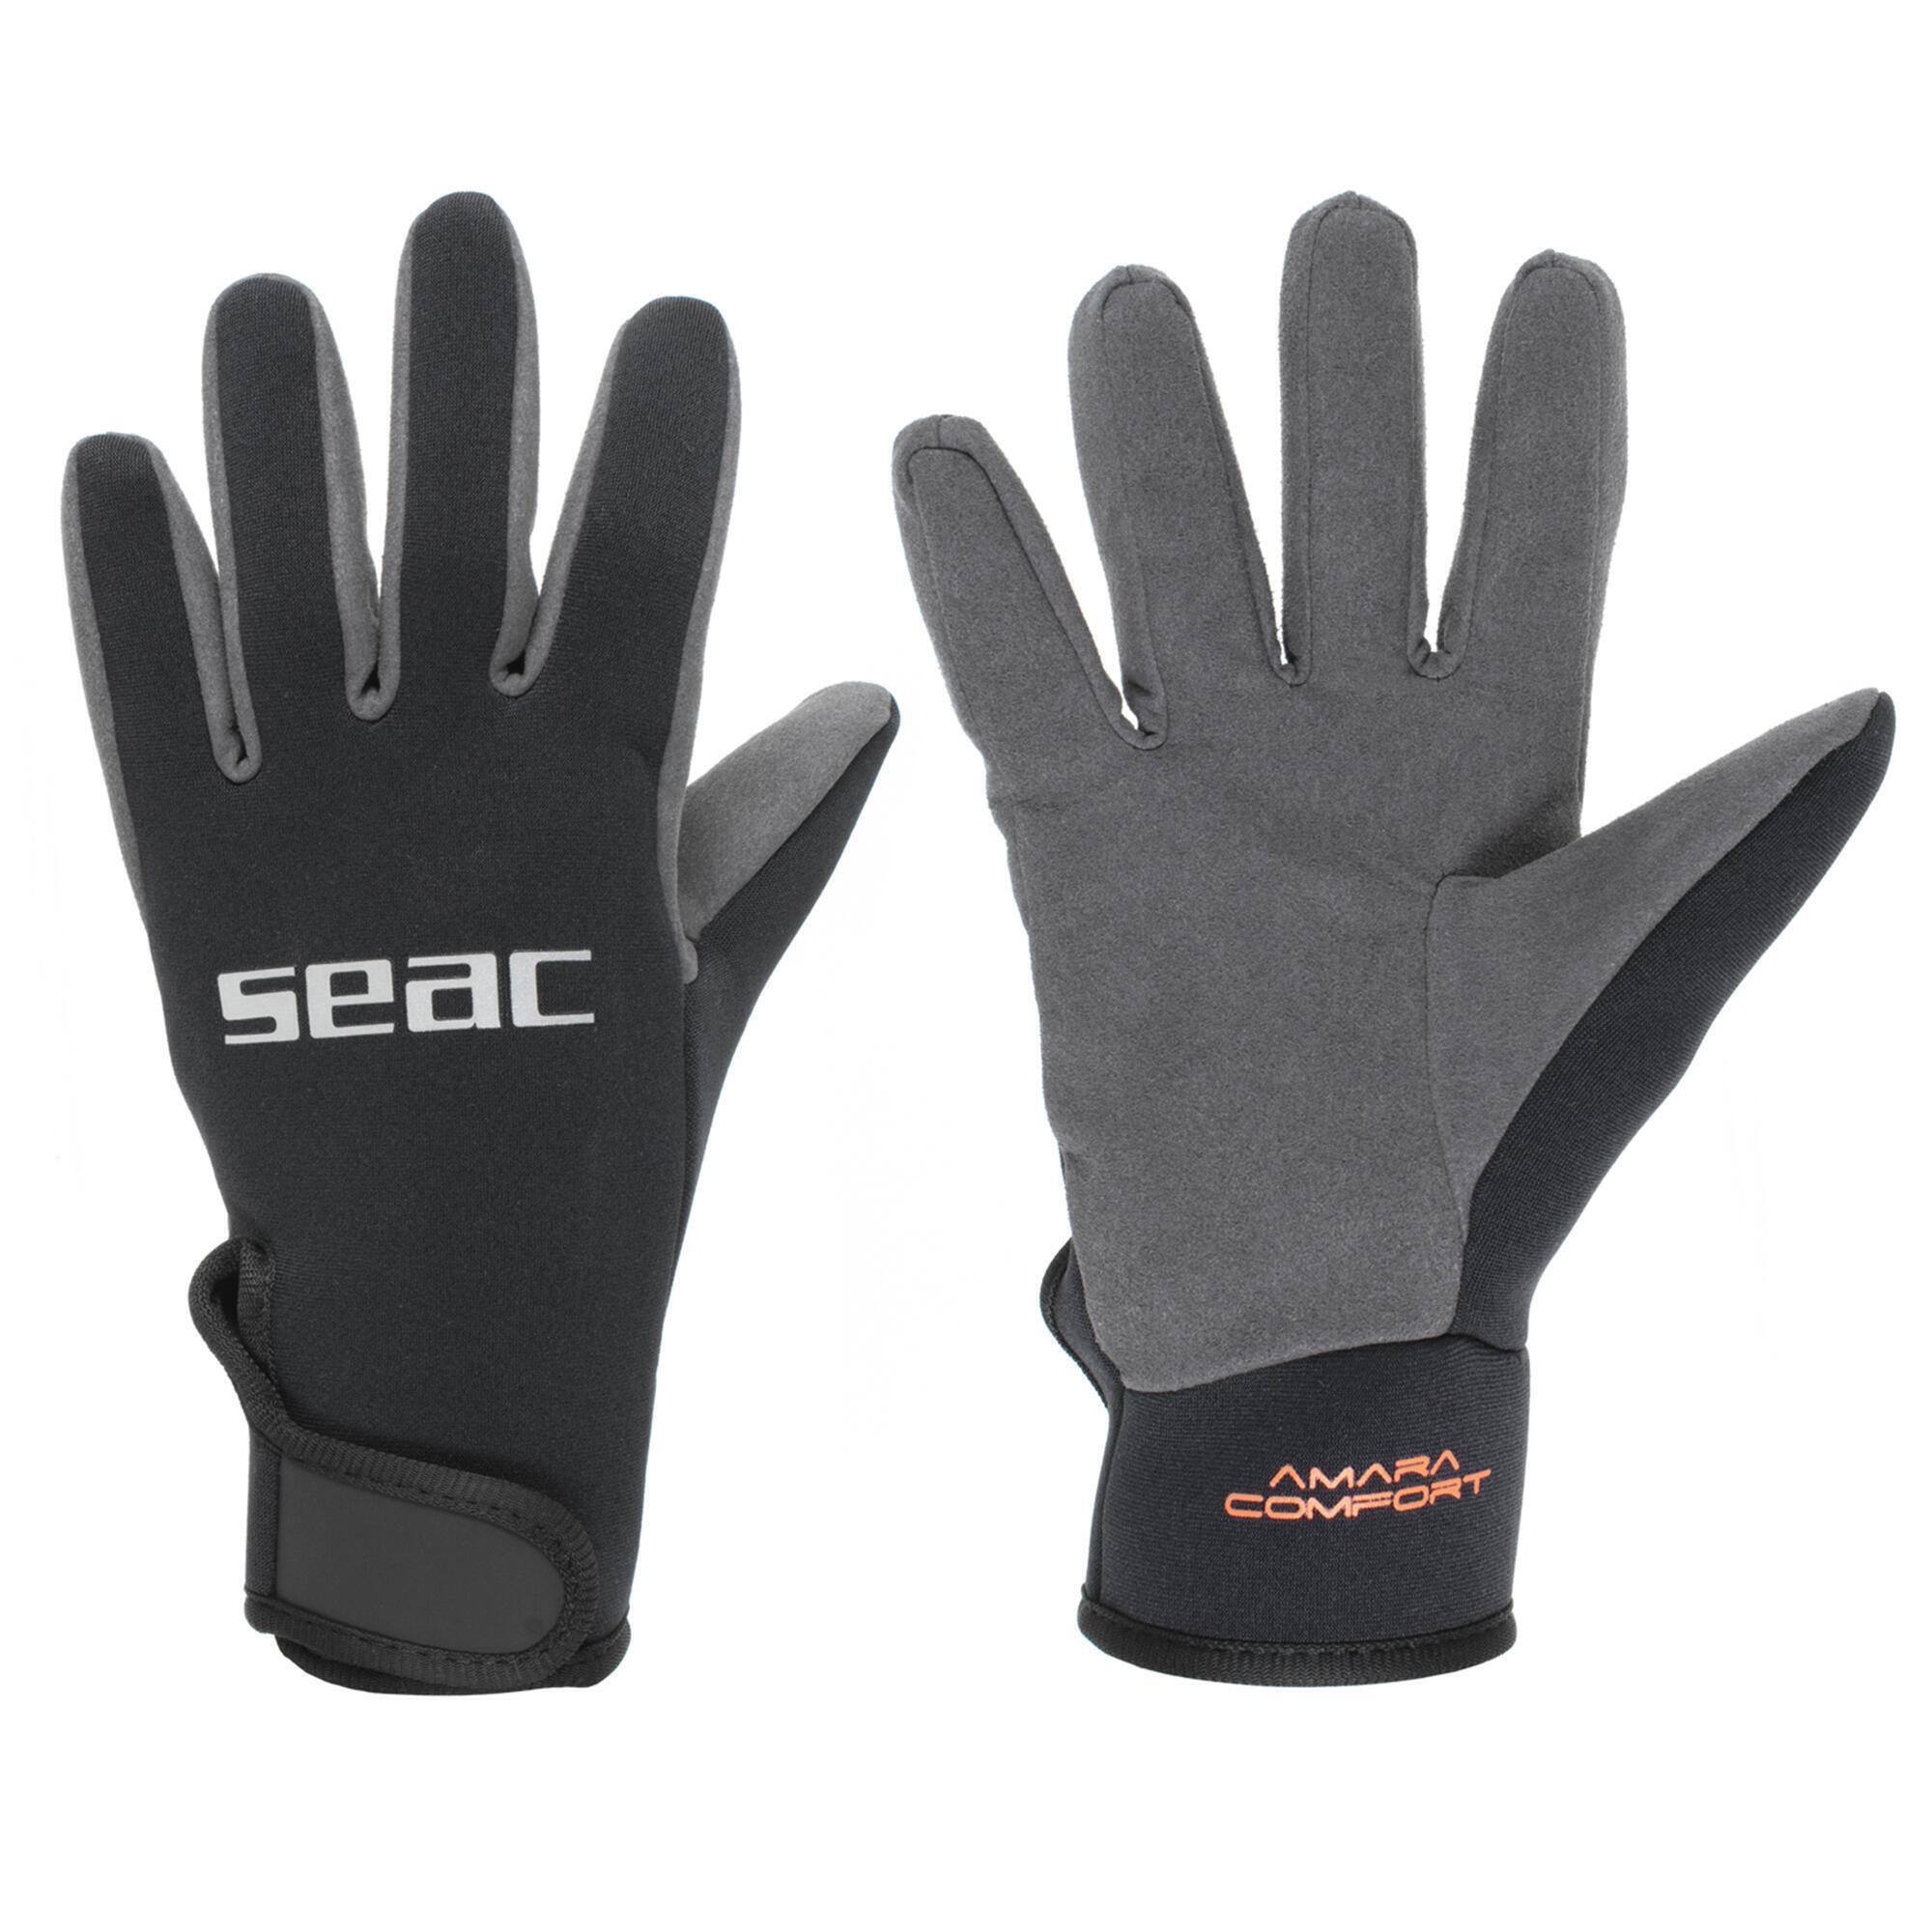 Неопреновые перчатки для дайвинга Amara comfort 1,5 мм SEAC, черный / светло-серый перчатки для дайвинга 3 мм неопреновые нескользящие перчатки для дайвинга теплые перчатки для плавания перчатки для подводной охоты серф